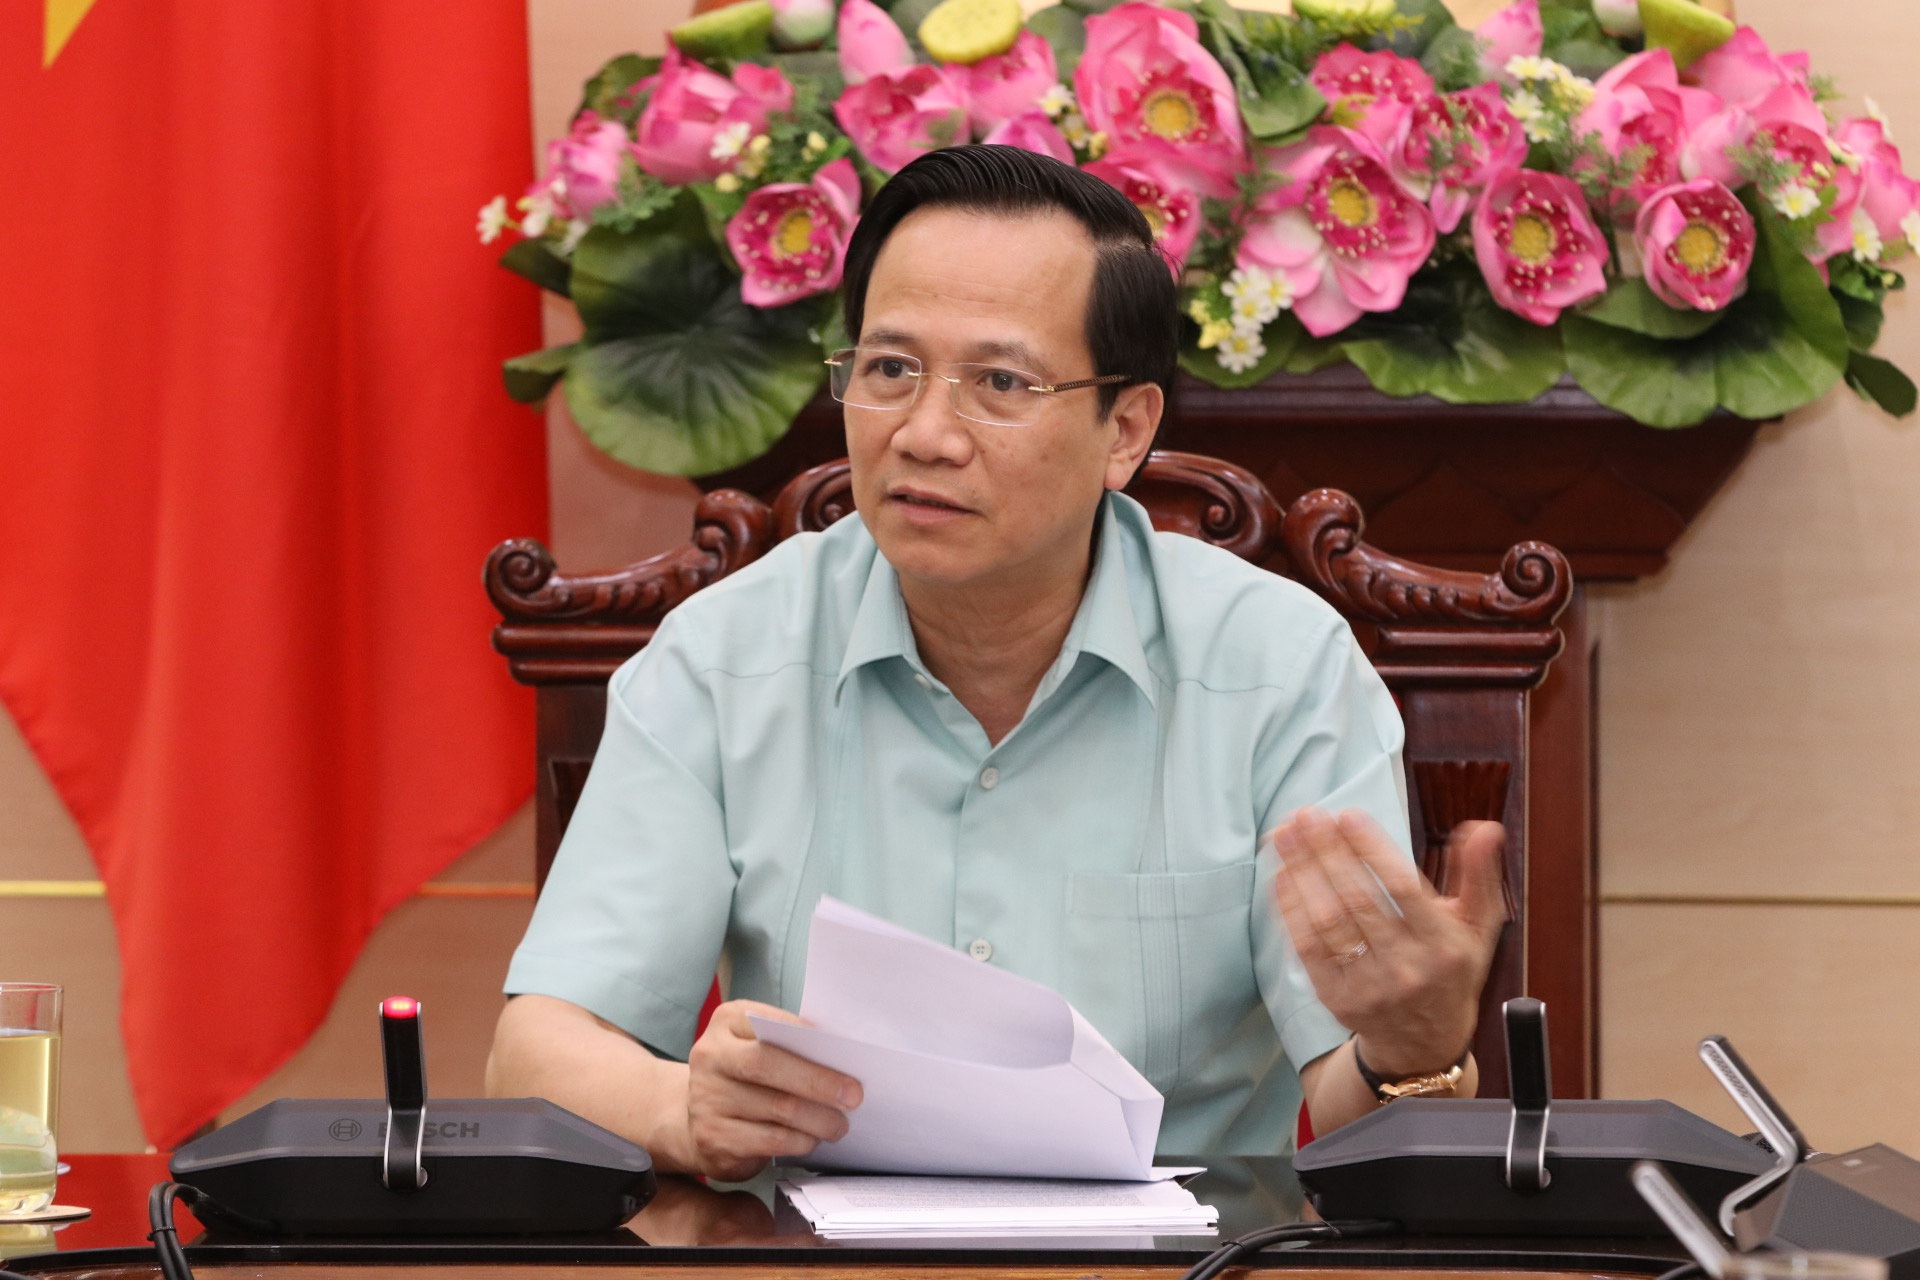 Bộ trưởng Đào Ngọc Dung: Đề xuất mới cho doanh nghiệp vay tiền trả lương